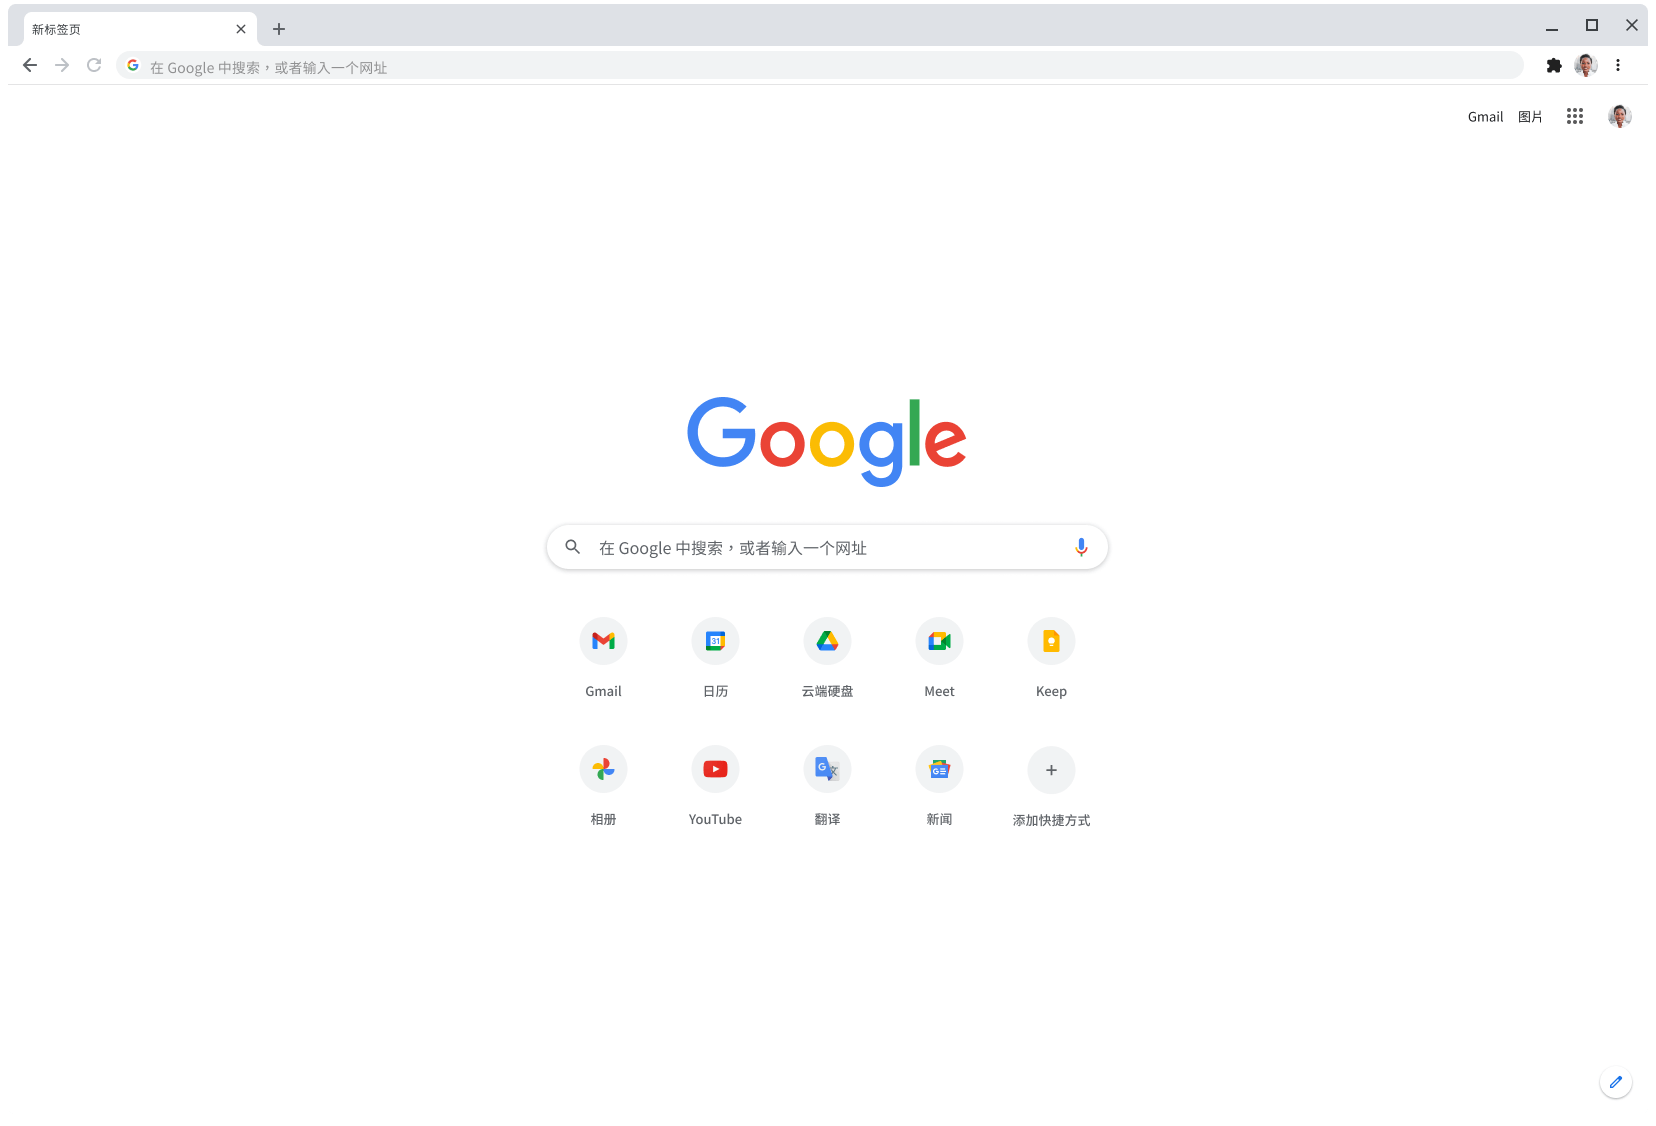 显示 Google.com 页面的 Chrome 浏览器窗口。